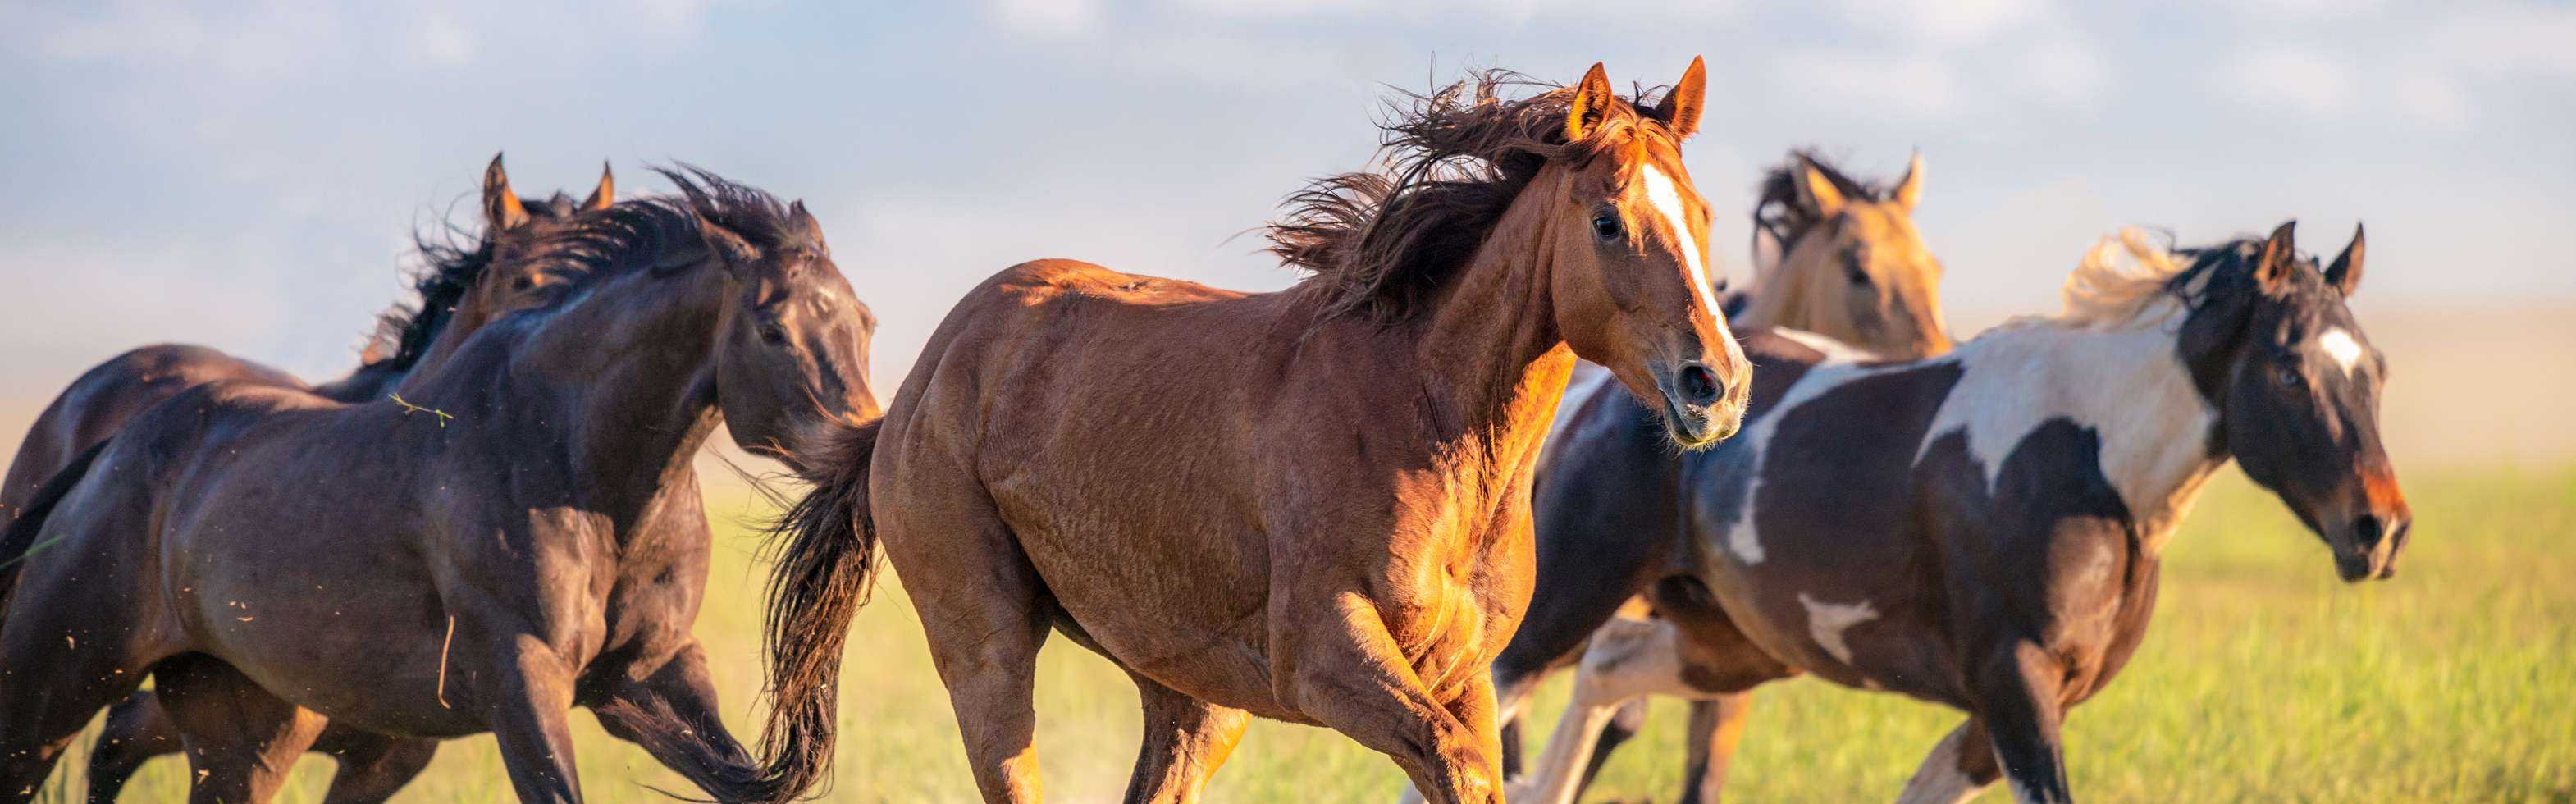 Разведение лошадей — важные моменты и особенности